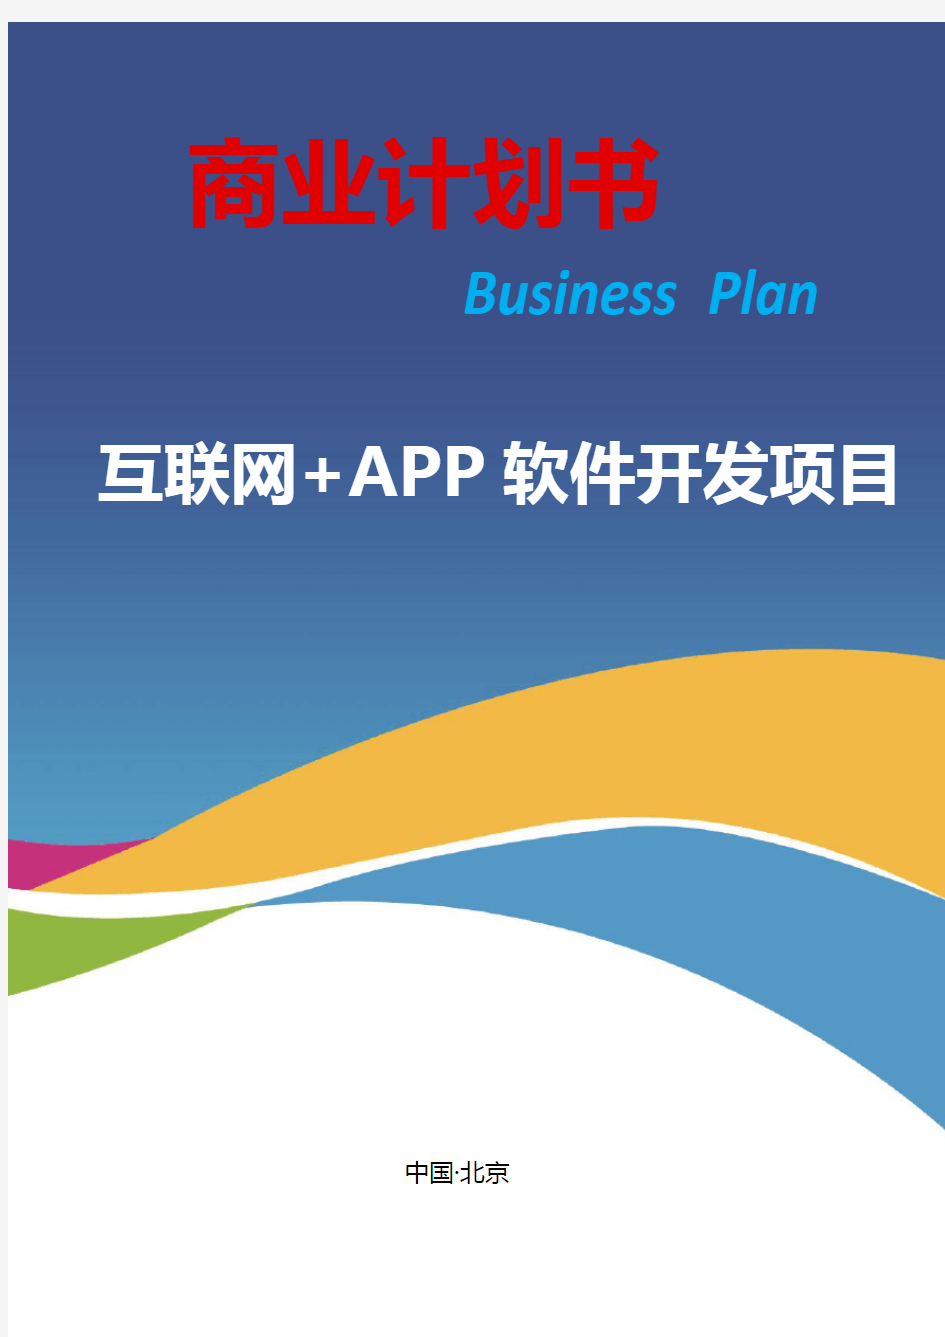 互联网 APP软件开发项目创业(商业)计划书